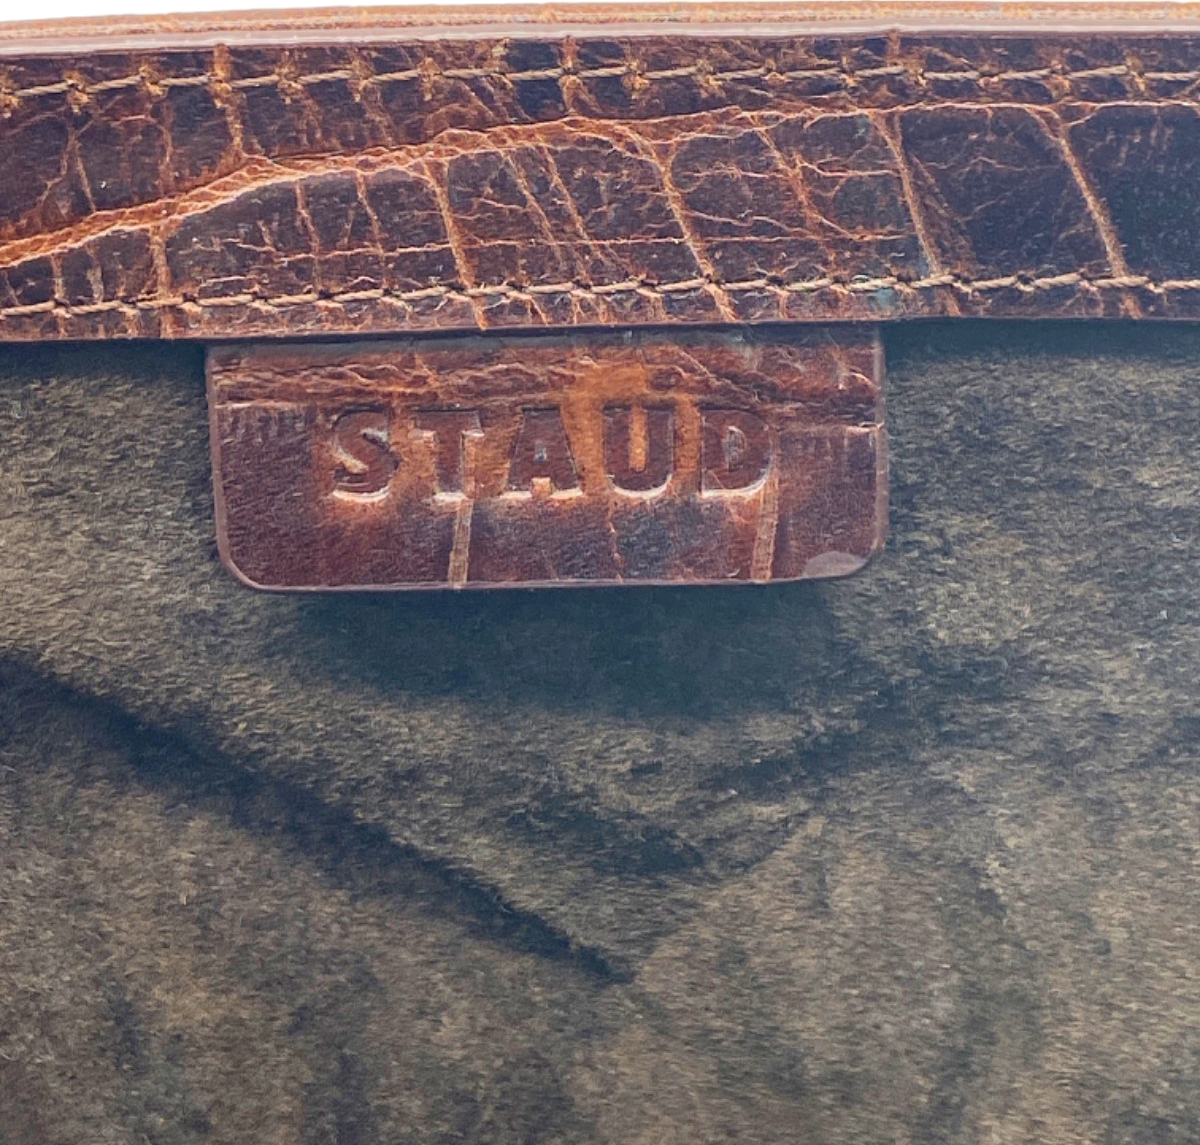 STAUD Brown Edie Croc-Embossed Leather Bucket Bag